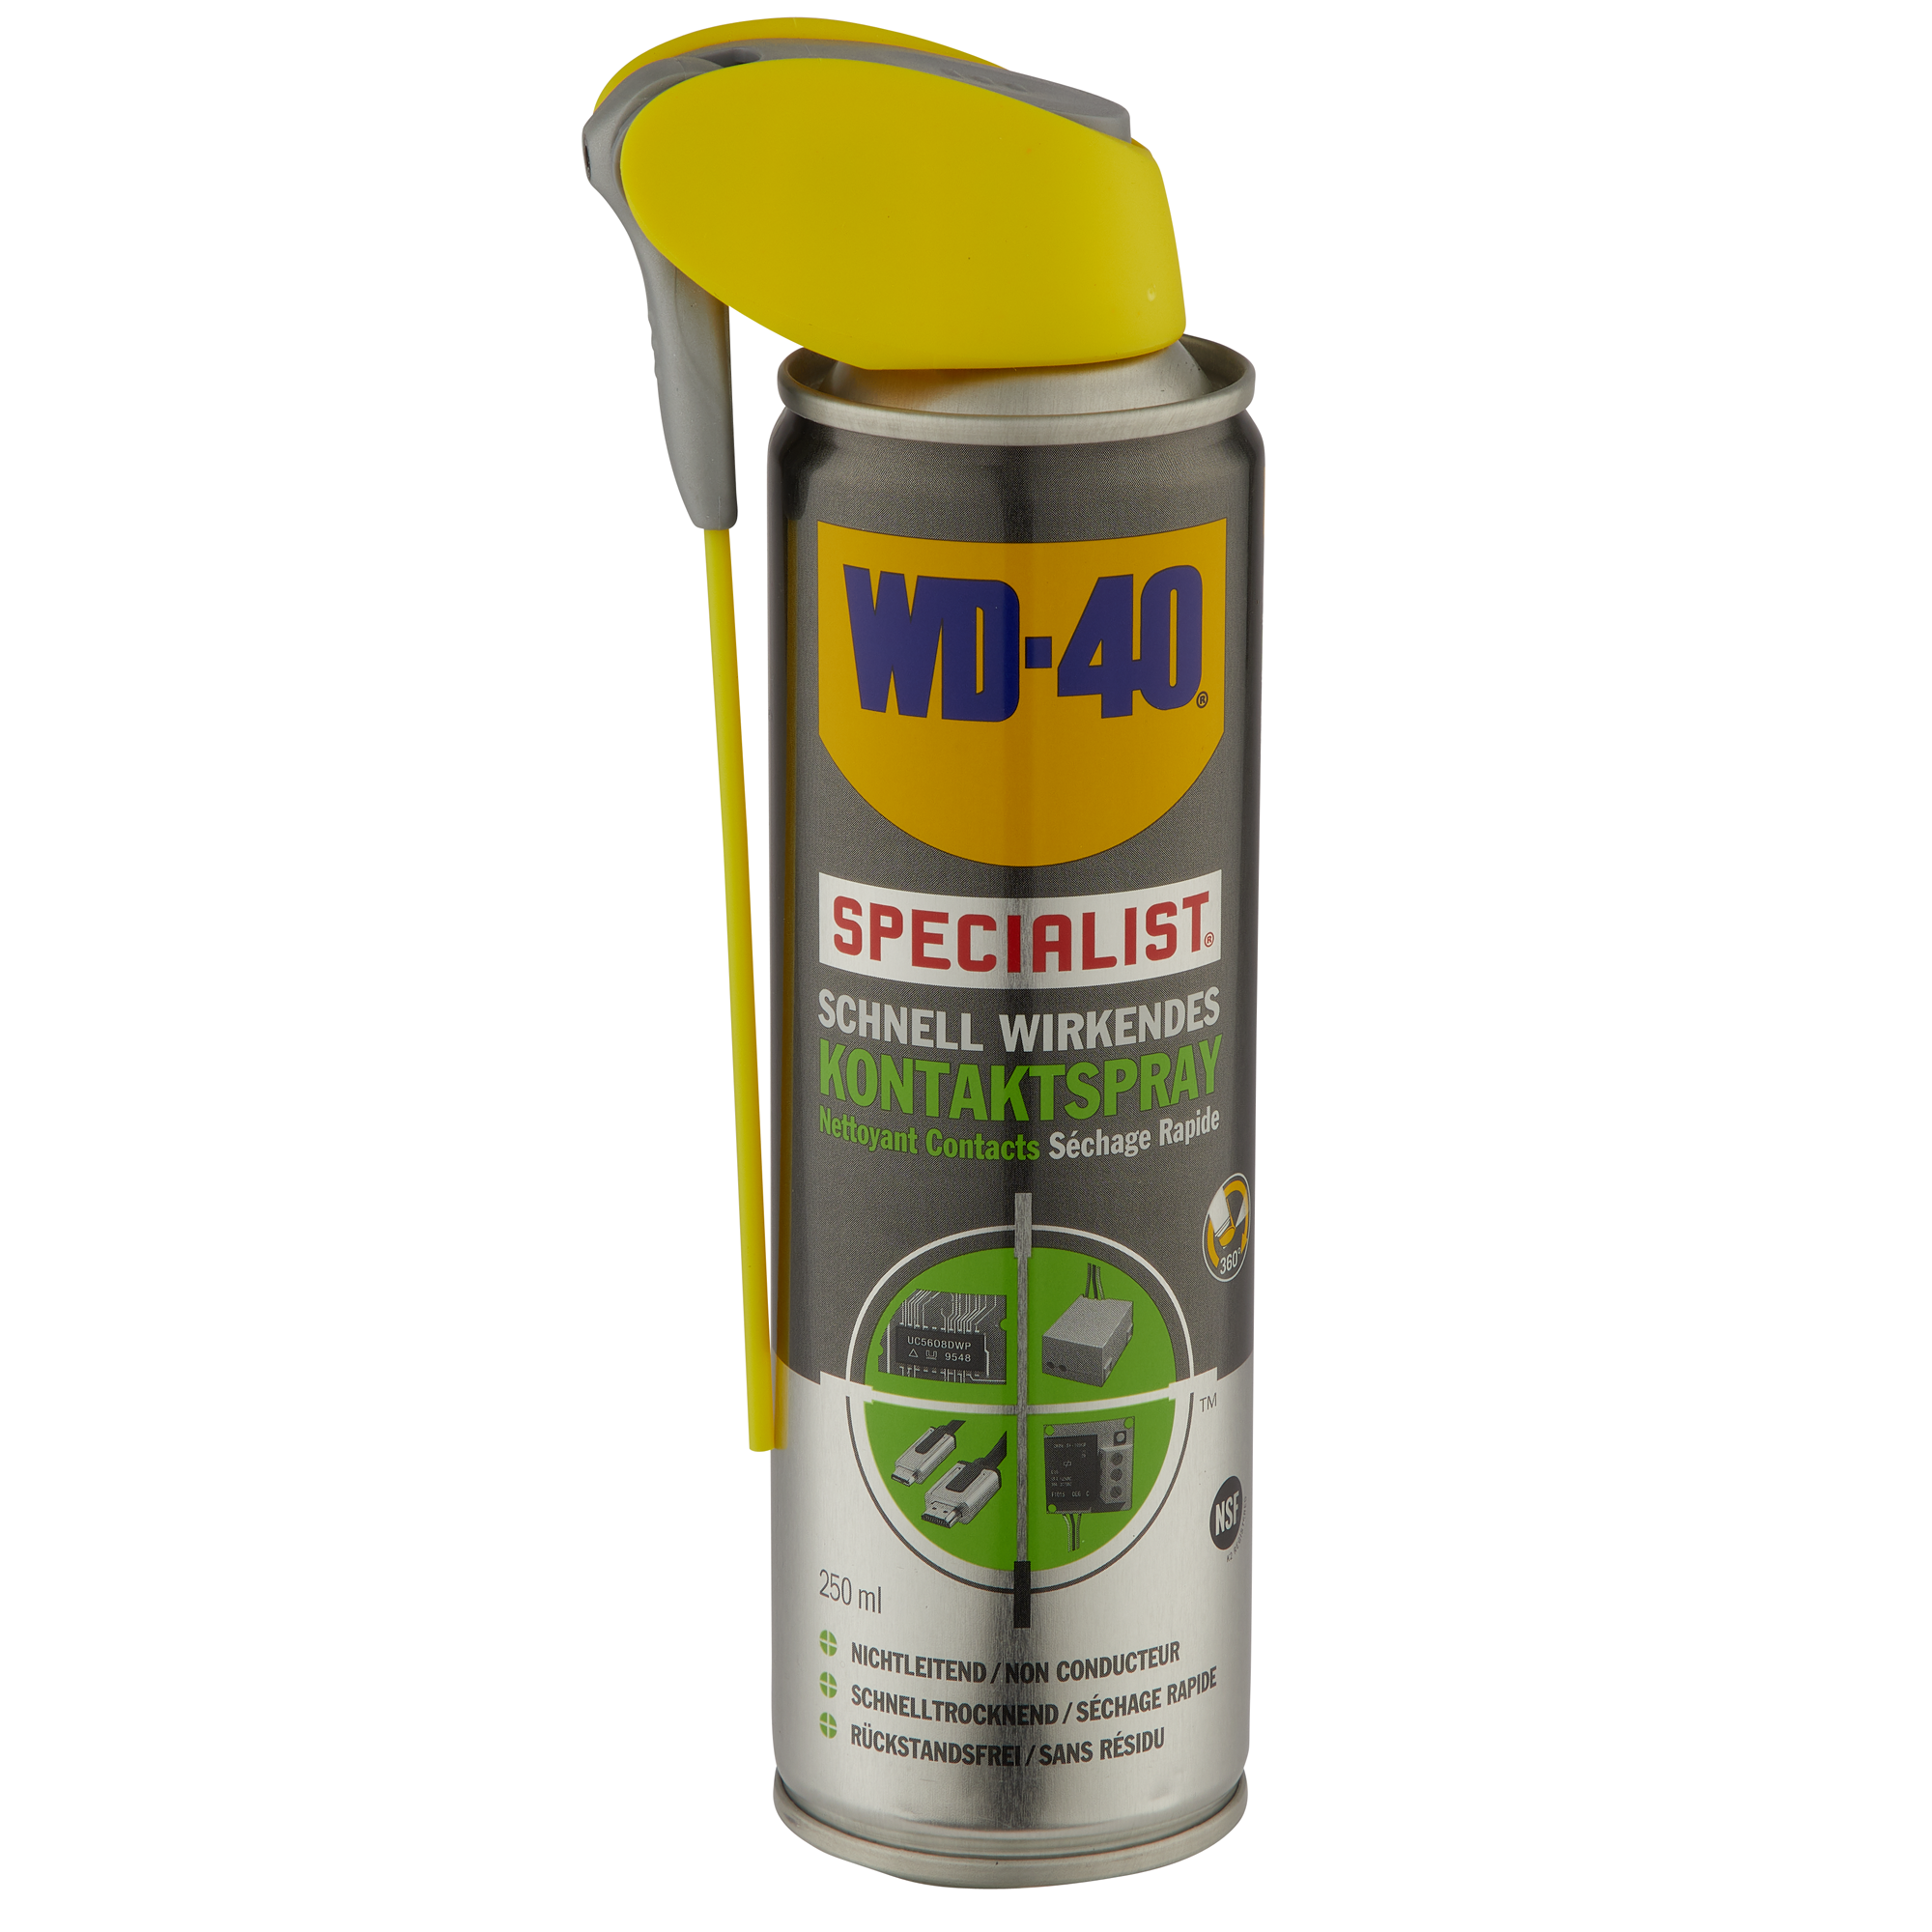 ml WD-40 Specialist Kontaktspray 250